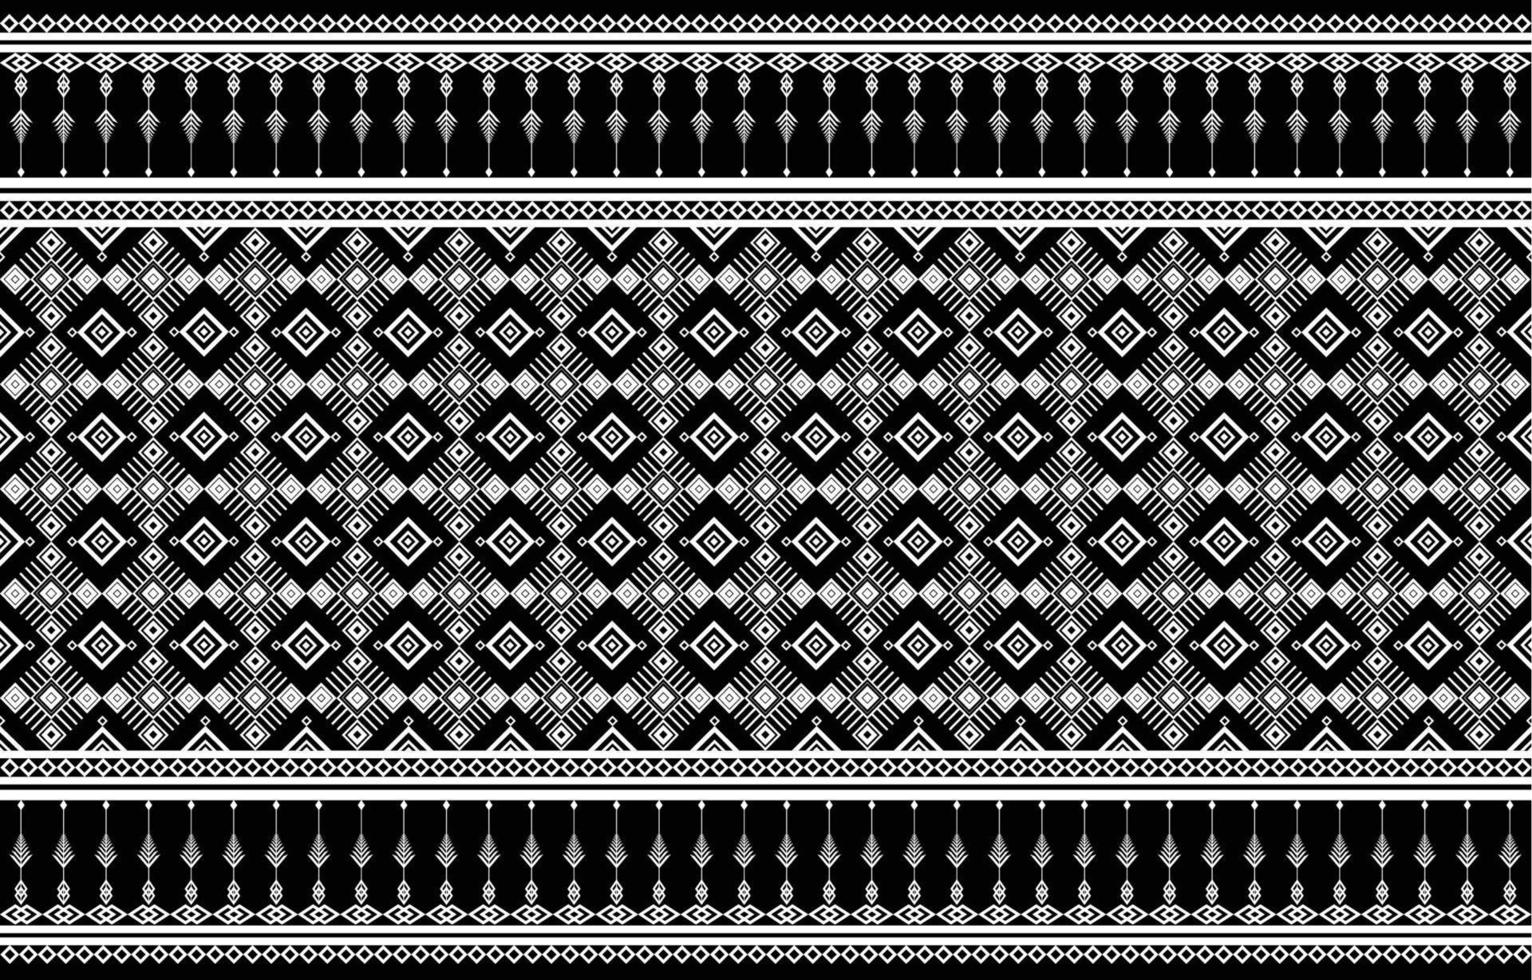 amerikanisches stoffmusterdesign. Verwenden Sie Geometrie, um ein Stoffmuster zu erstellen. Design für Textilindustrie, Hintergrund, Teppich, Tapeten, Kleidung, Batik und ethnische Stoffe. vektor